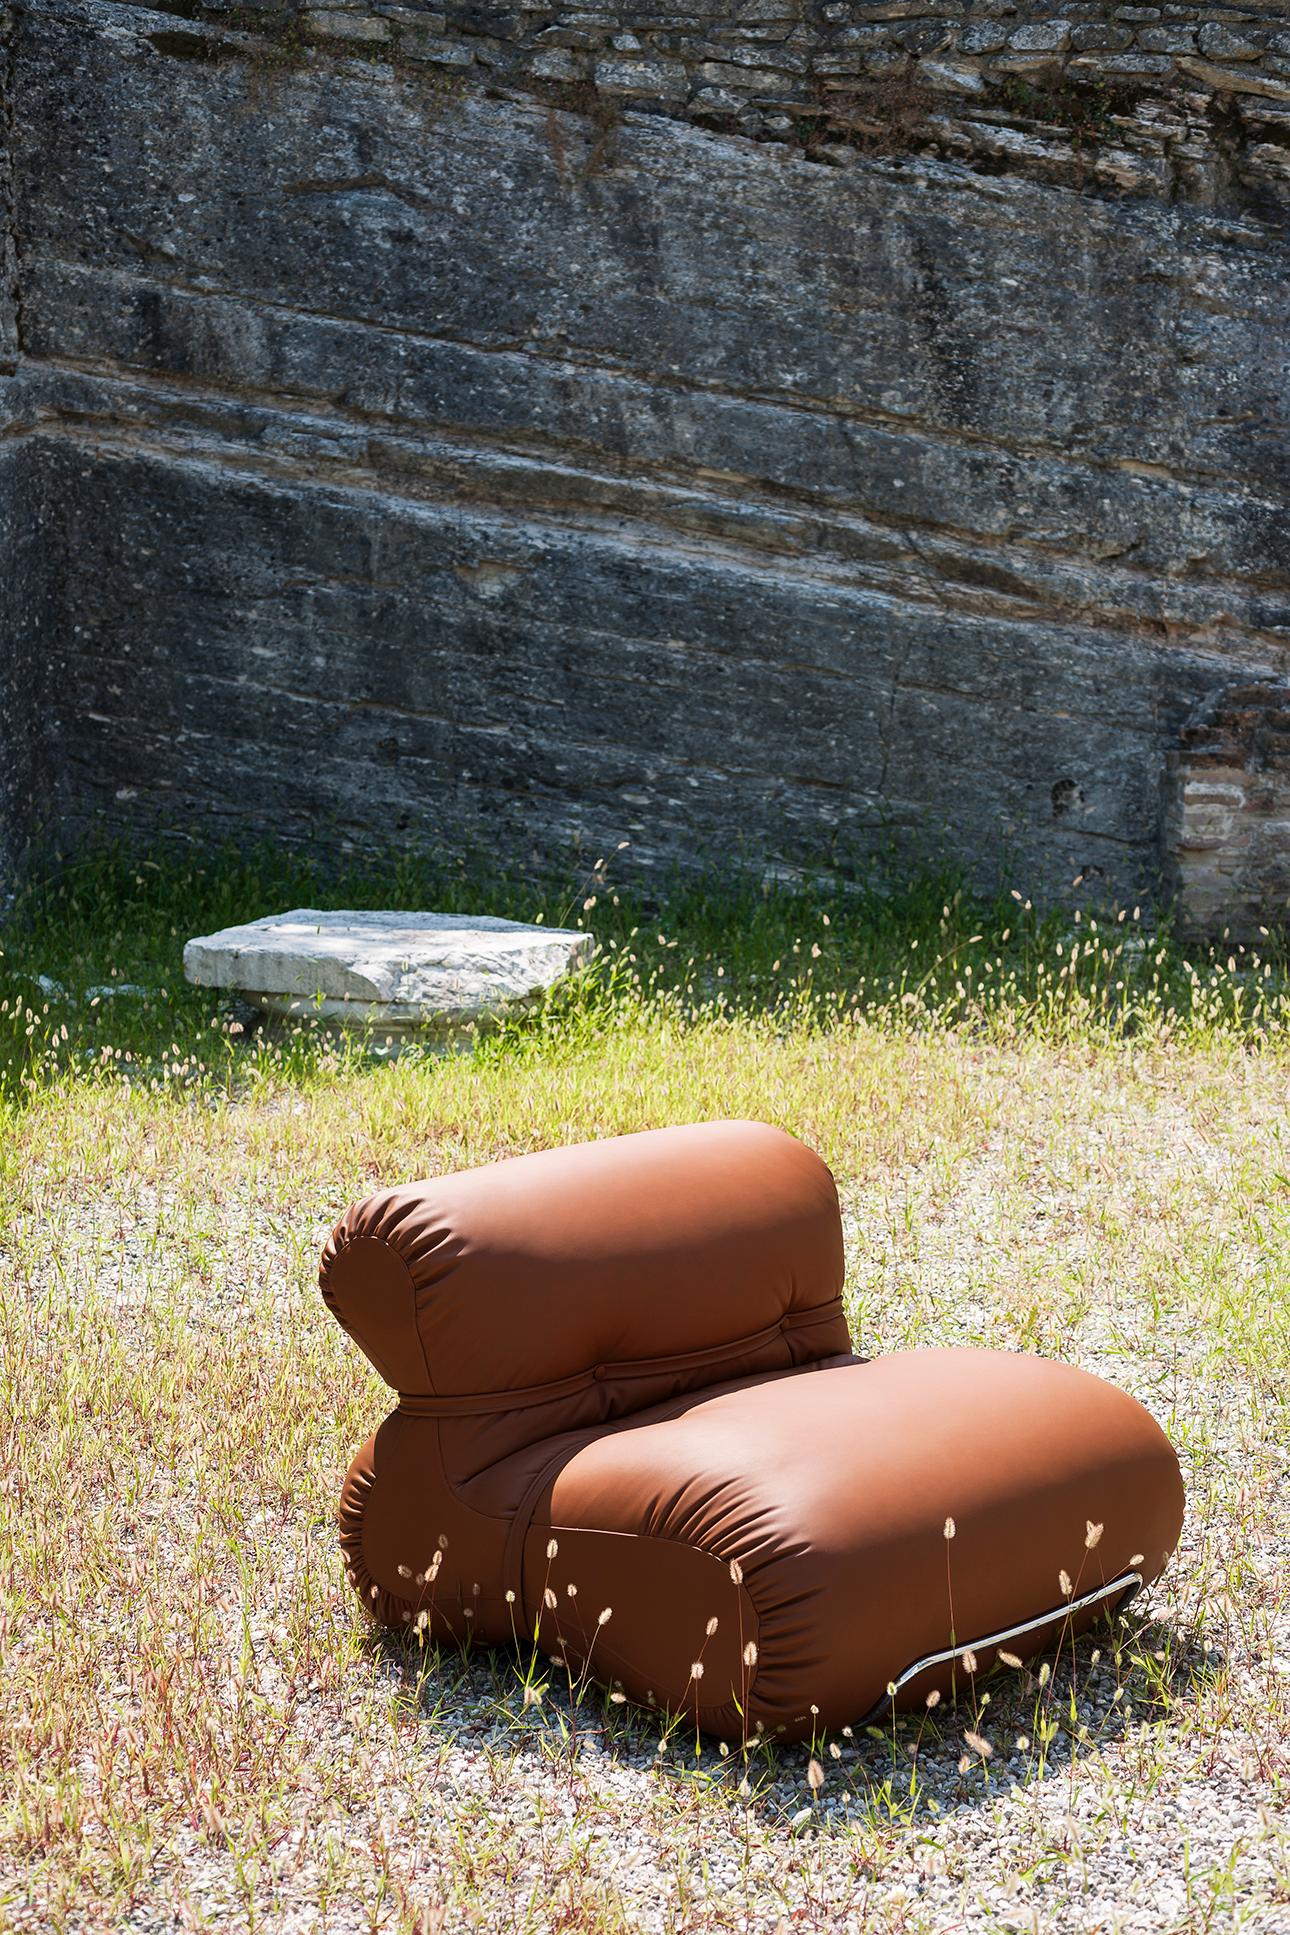 Contemporary Orsola Armchair  designed by Gastone Rinaldi for Tacchini